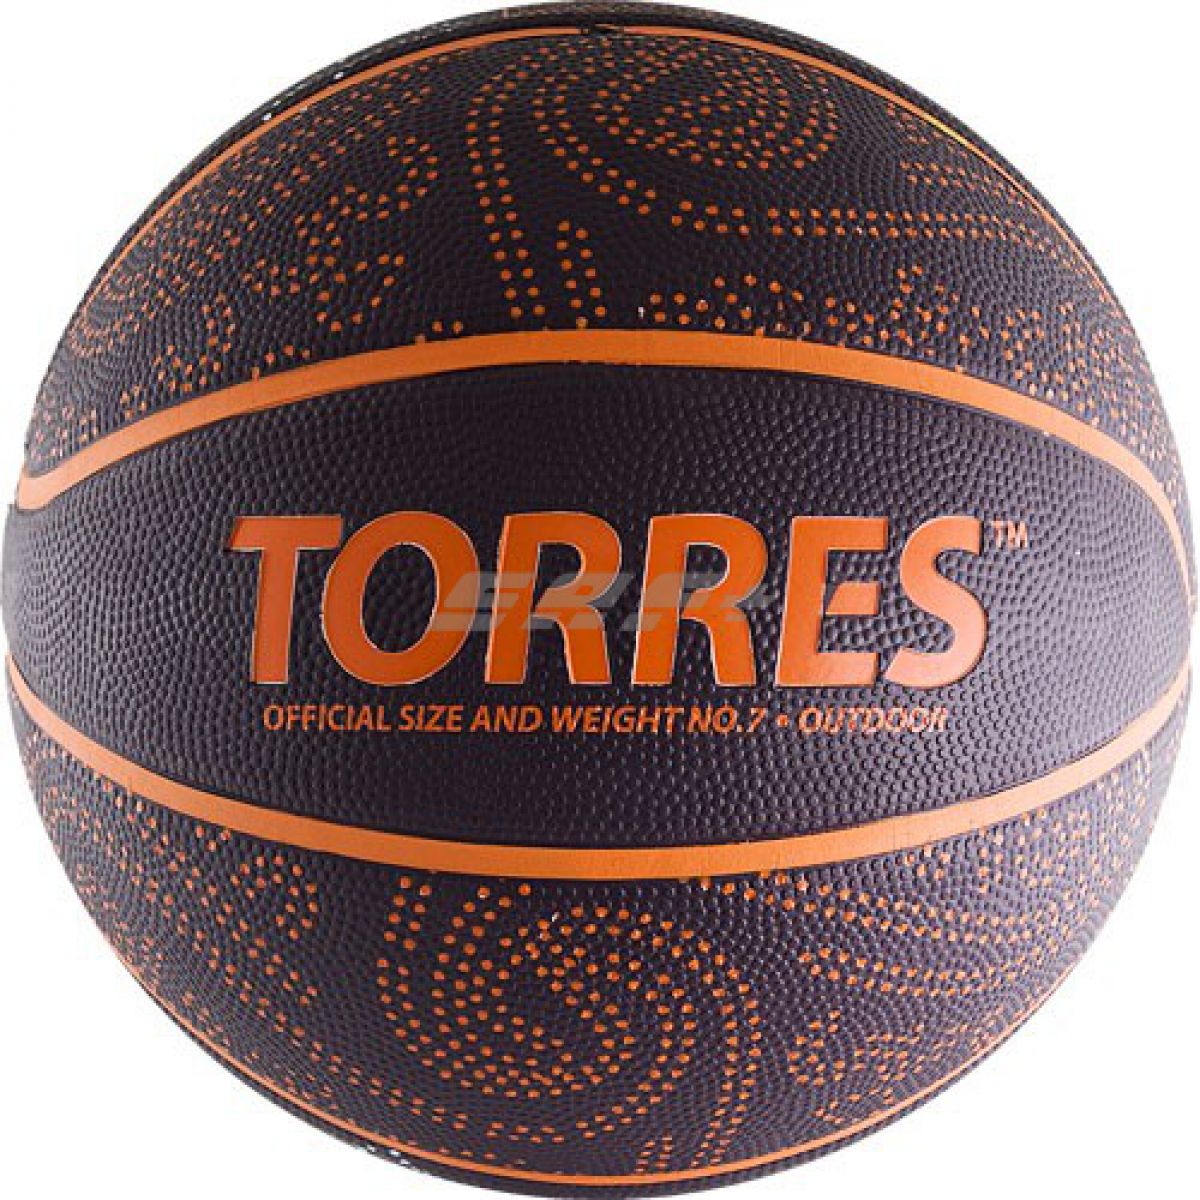 Мяч баскетбольный TORRES TT